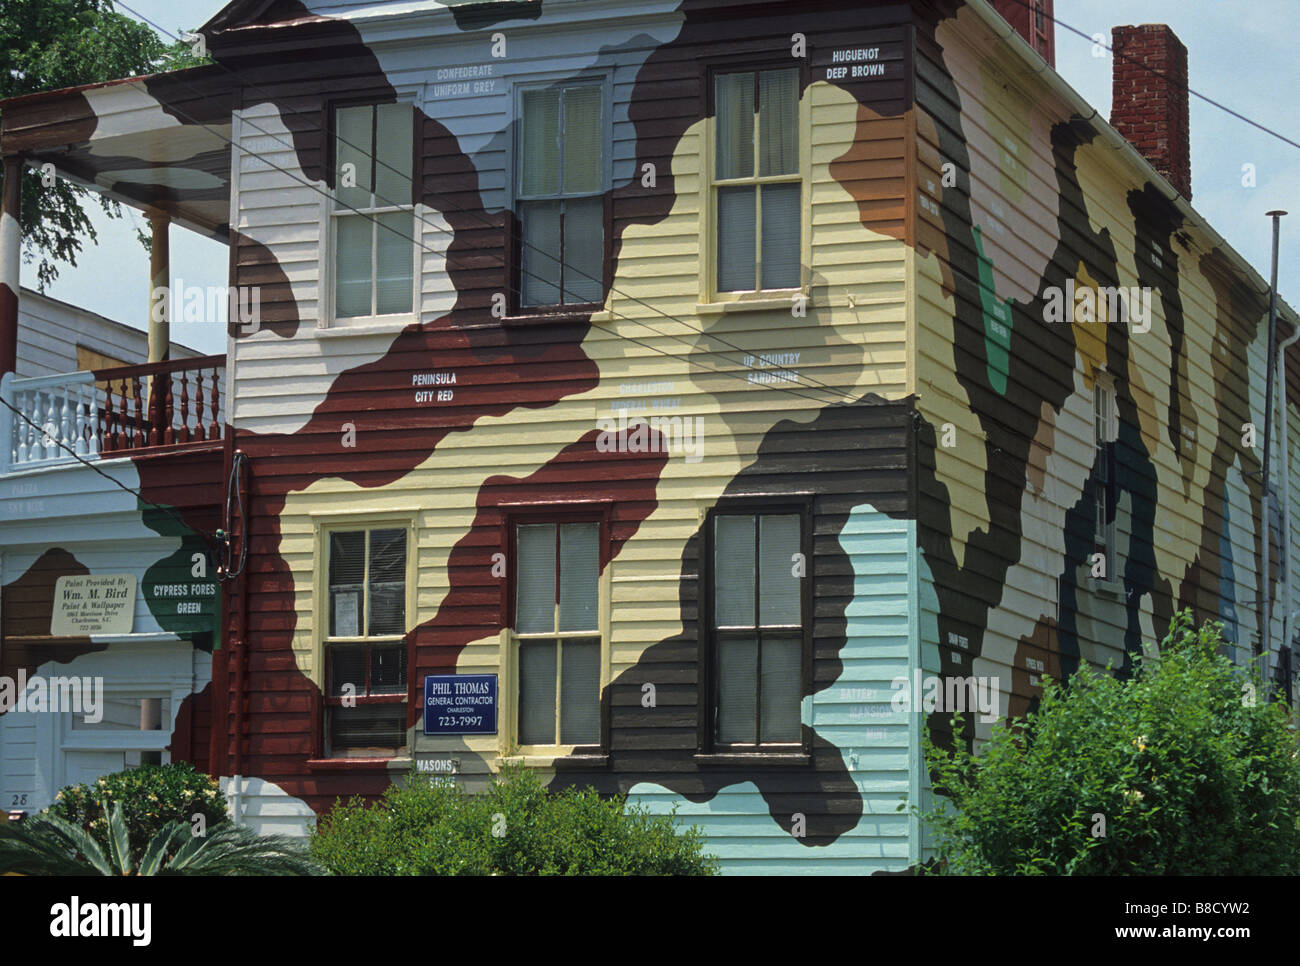 Elk219 1307 South Carolina Charleston house with camoflauge paint Stock Photo